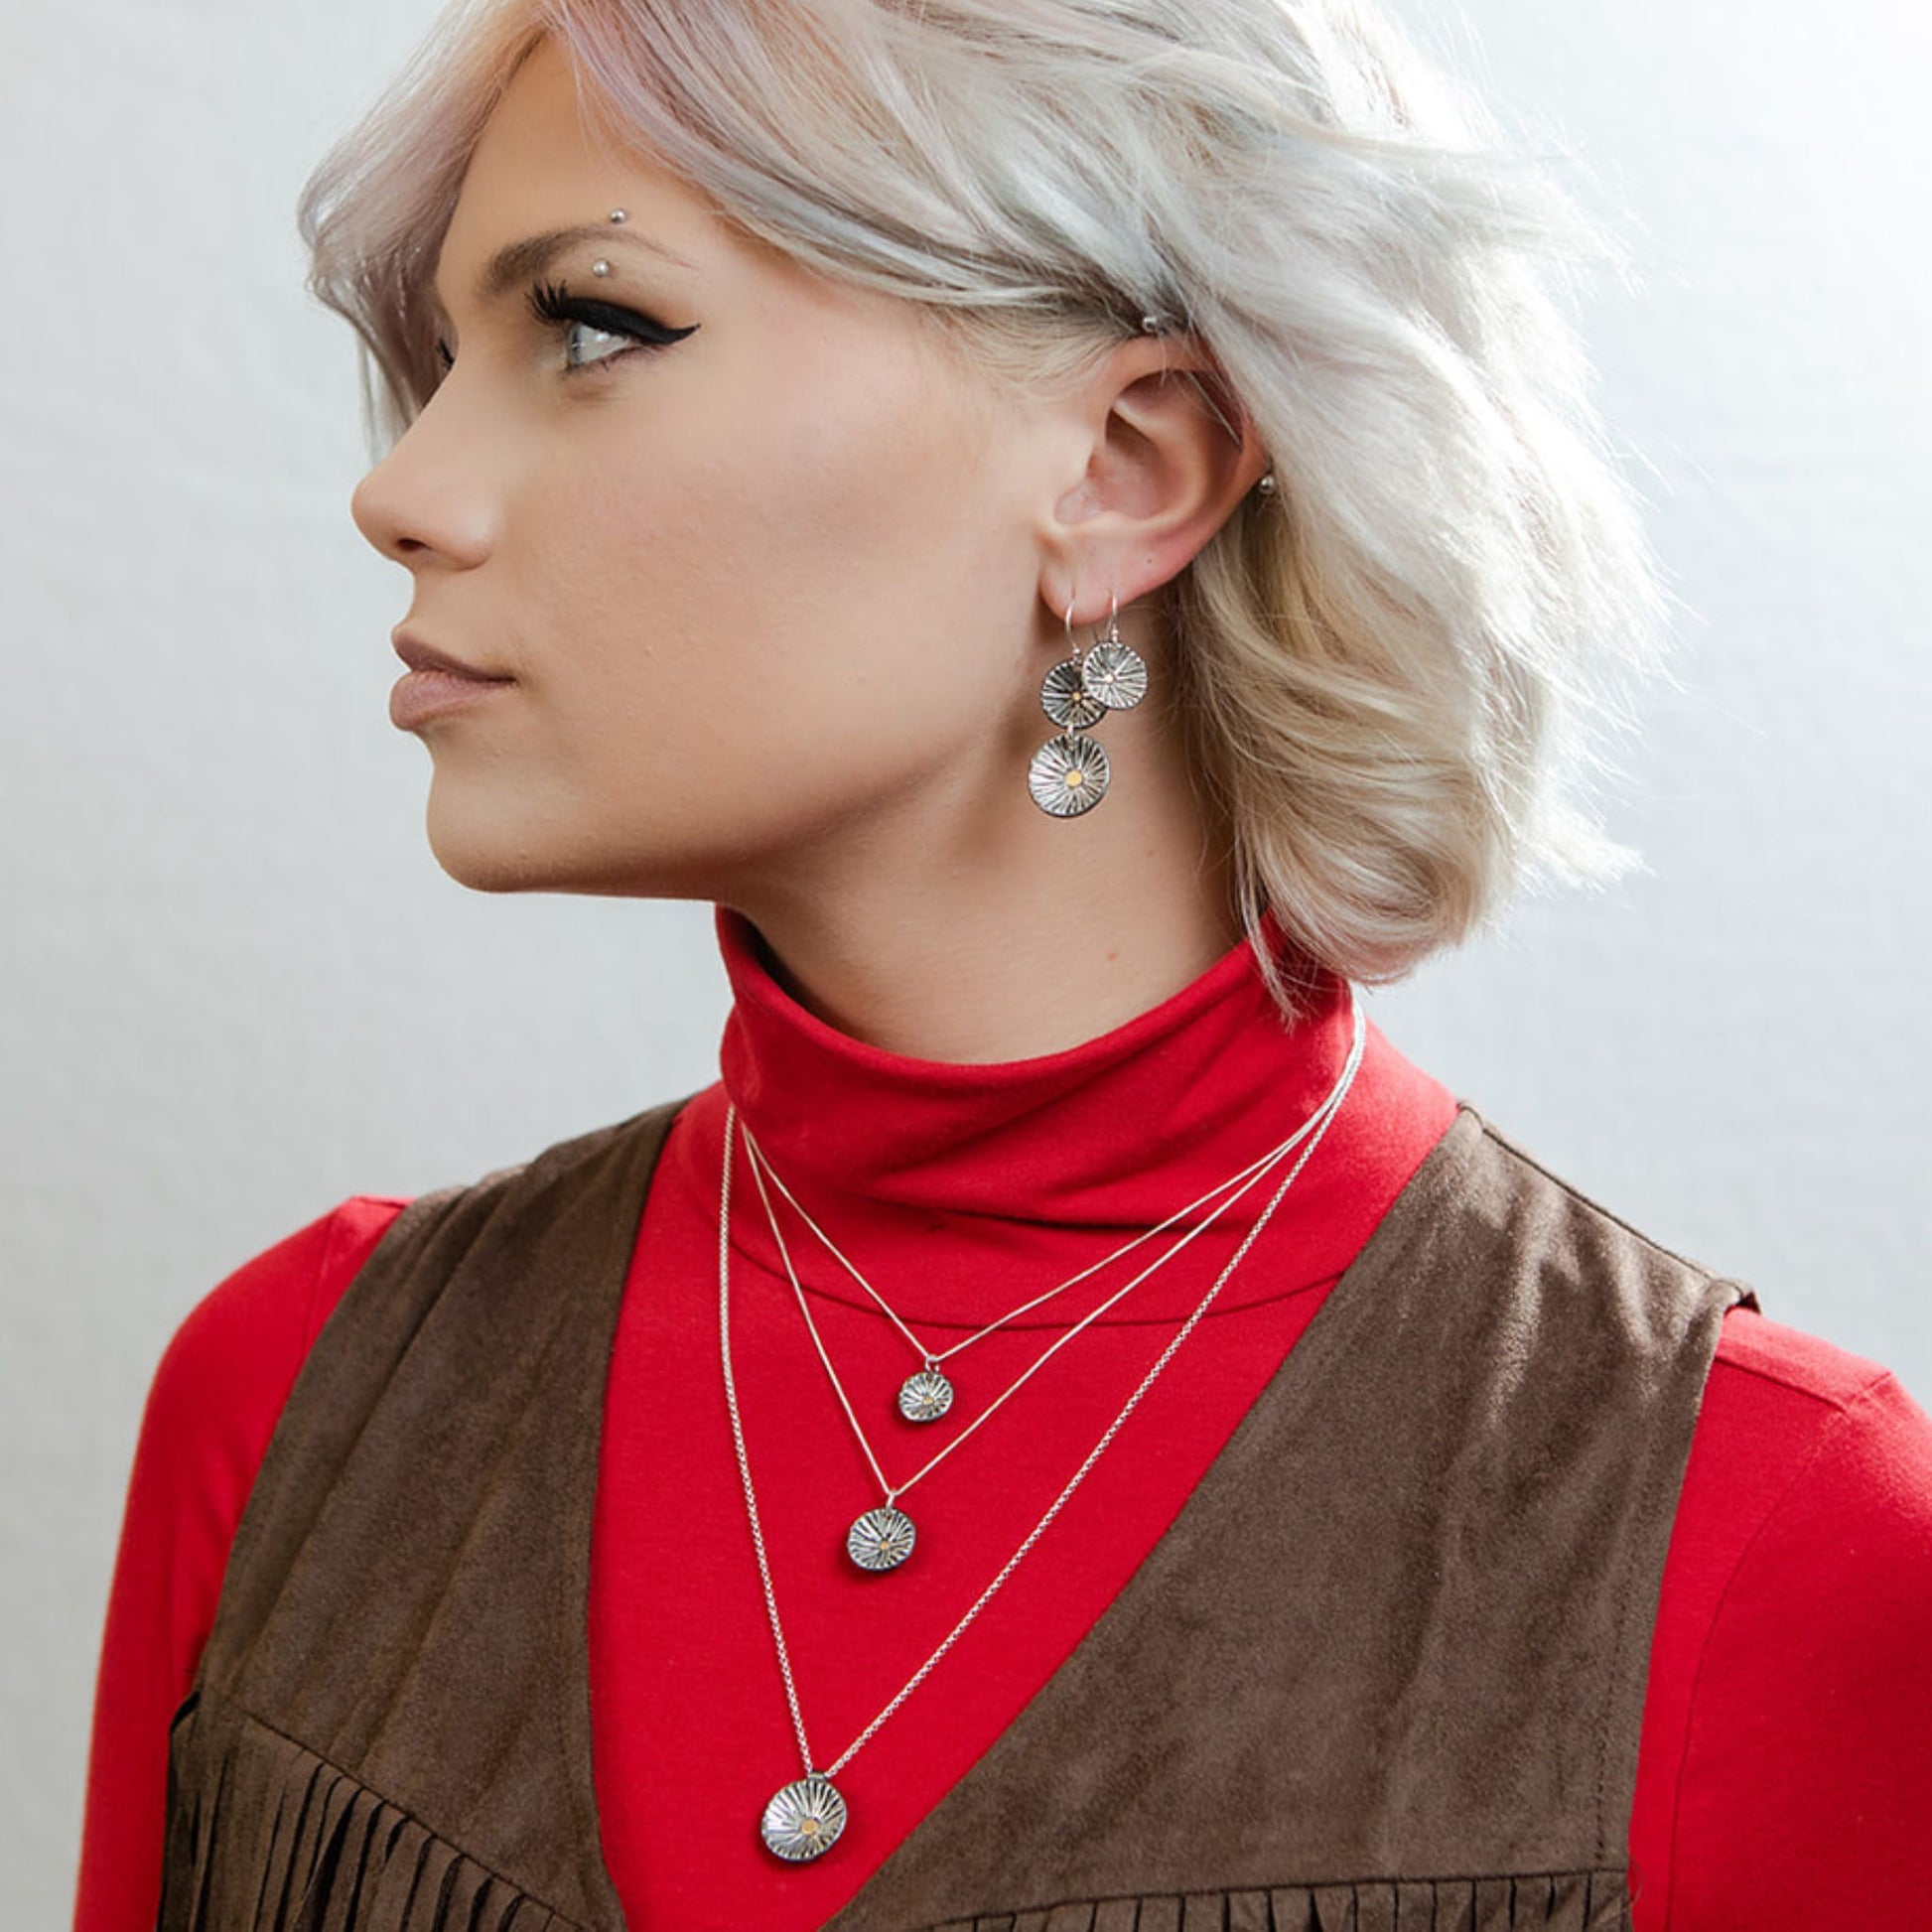 Model wearing radiance earrings